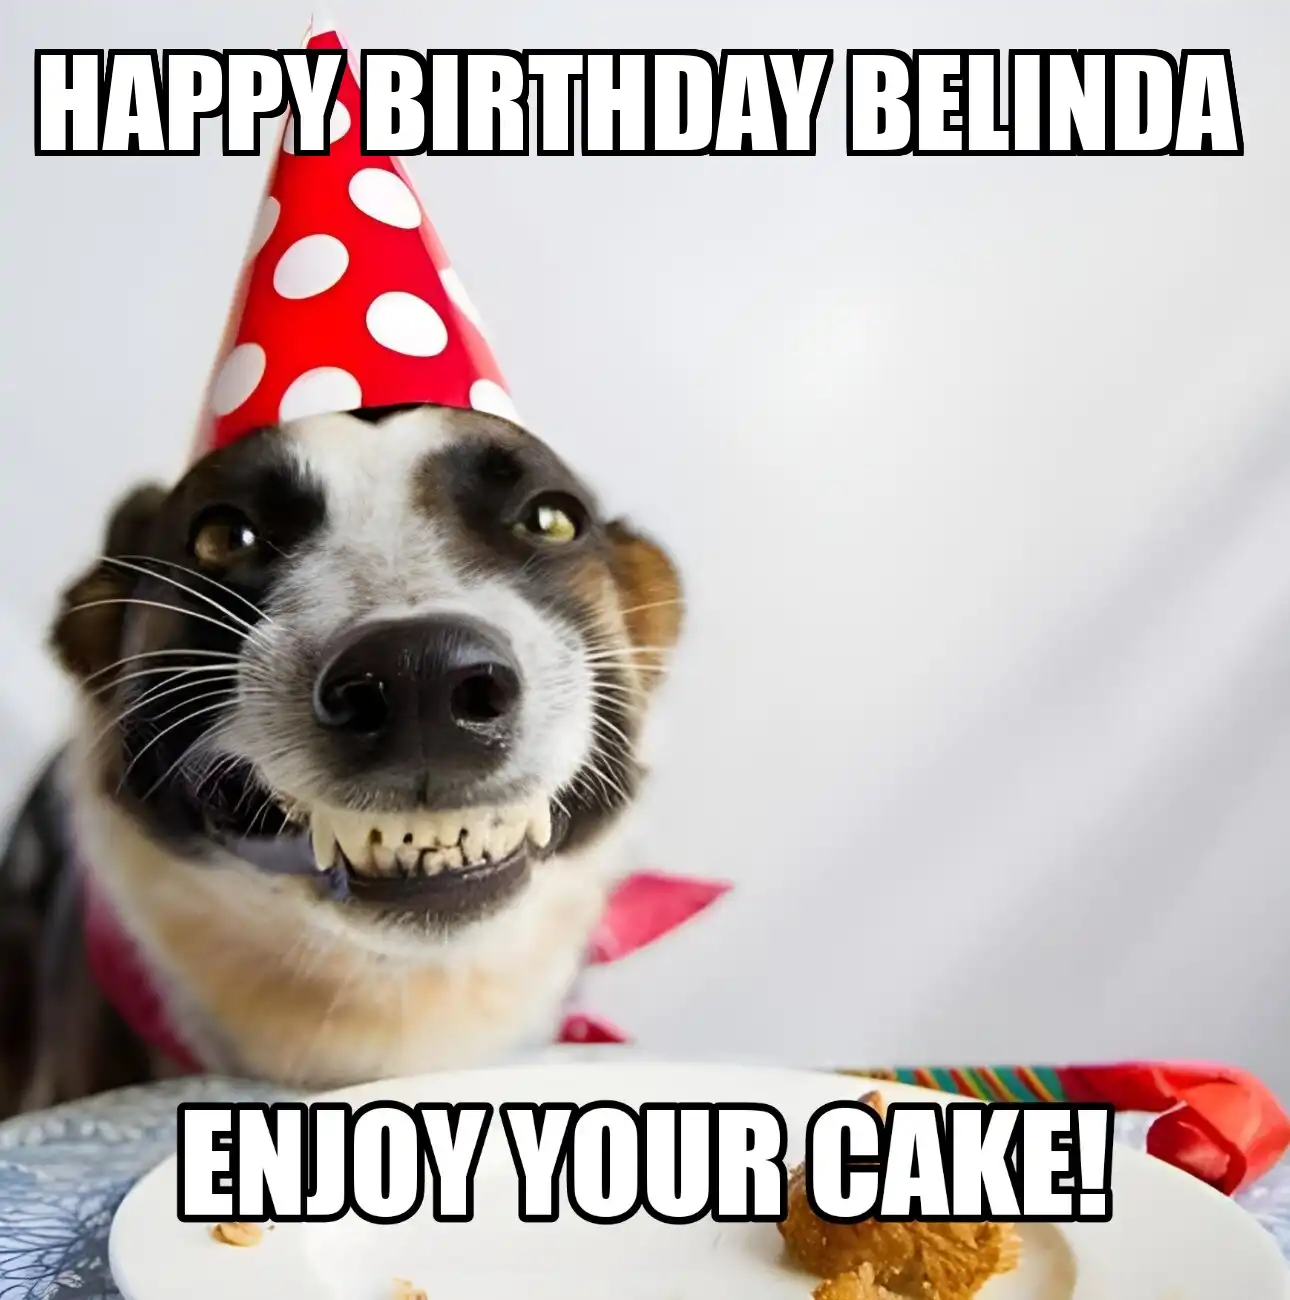 Happy Birthday Belinda Enjoy Your Cake Dog Meme